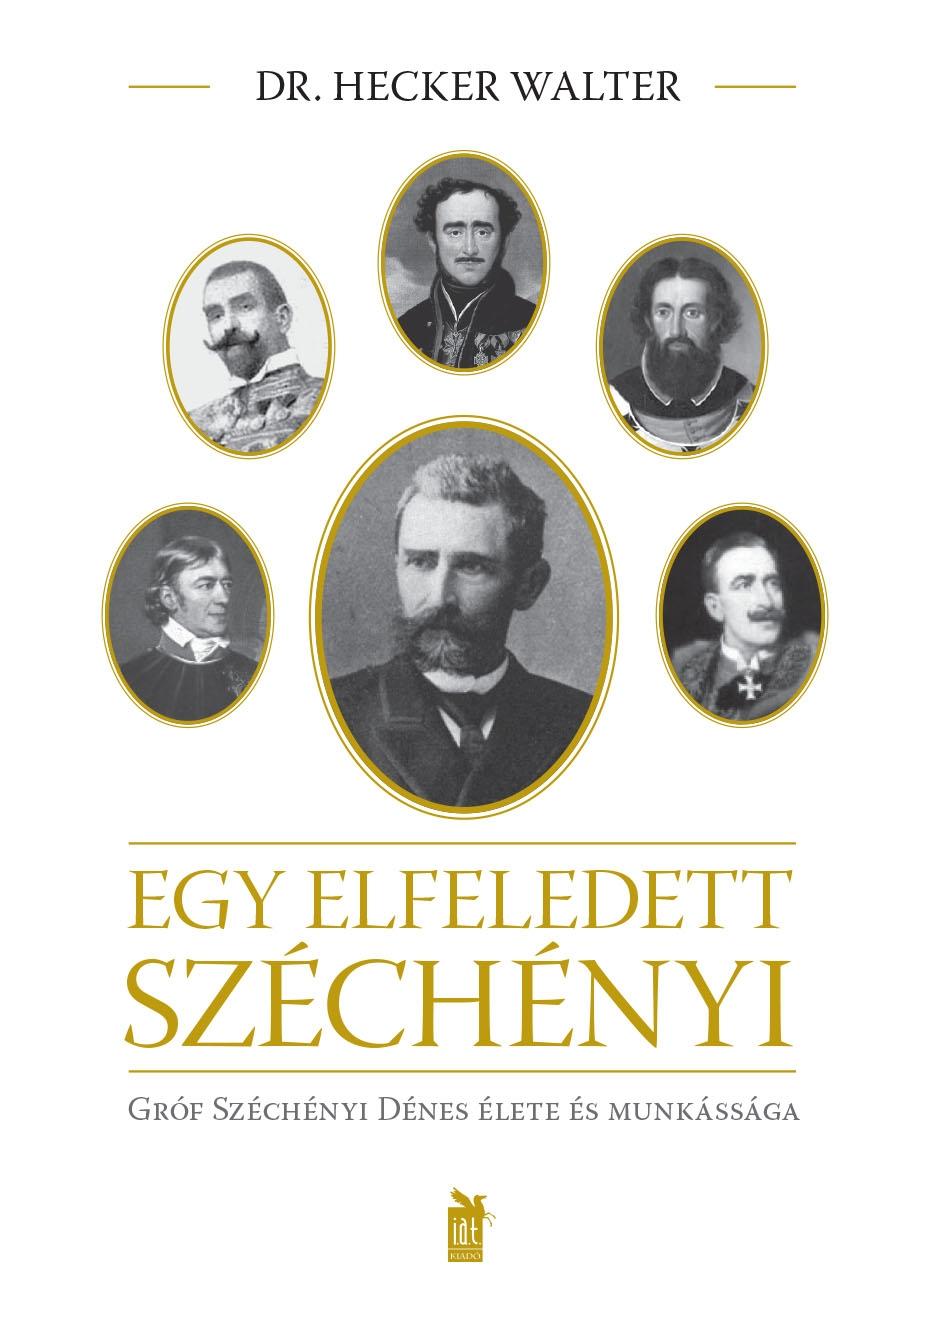 DR. HECKER WALTER - EGY ELFELEDETT SZCHNYI